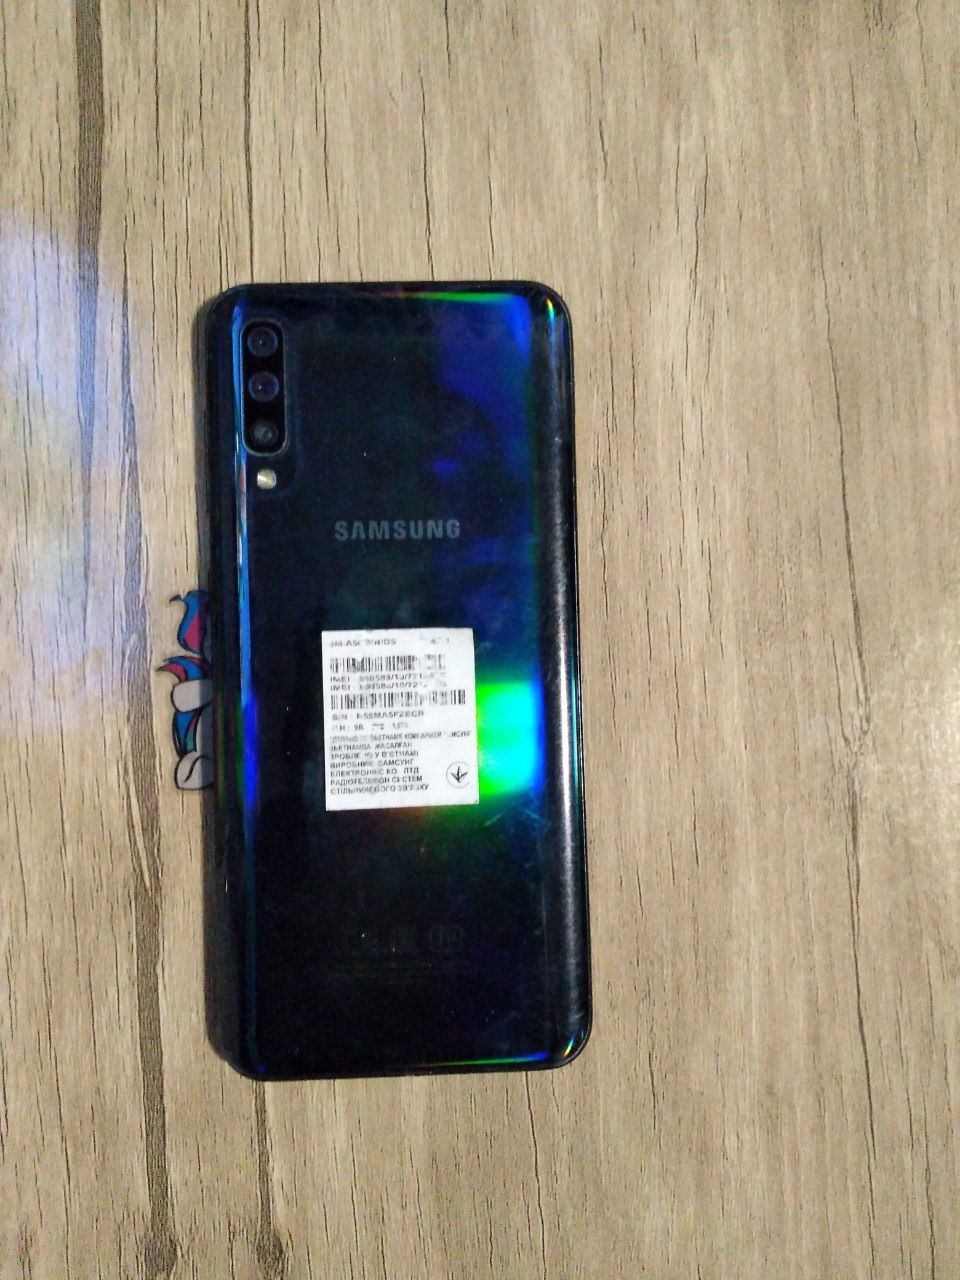 Samsung A50 ishlashi zo'r